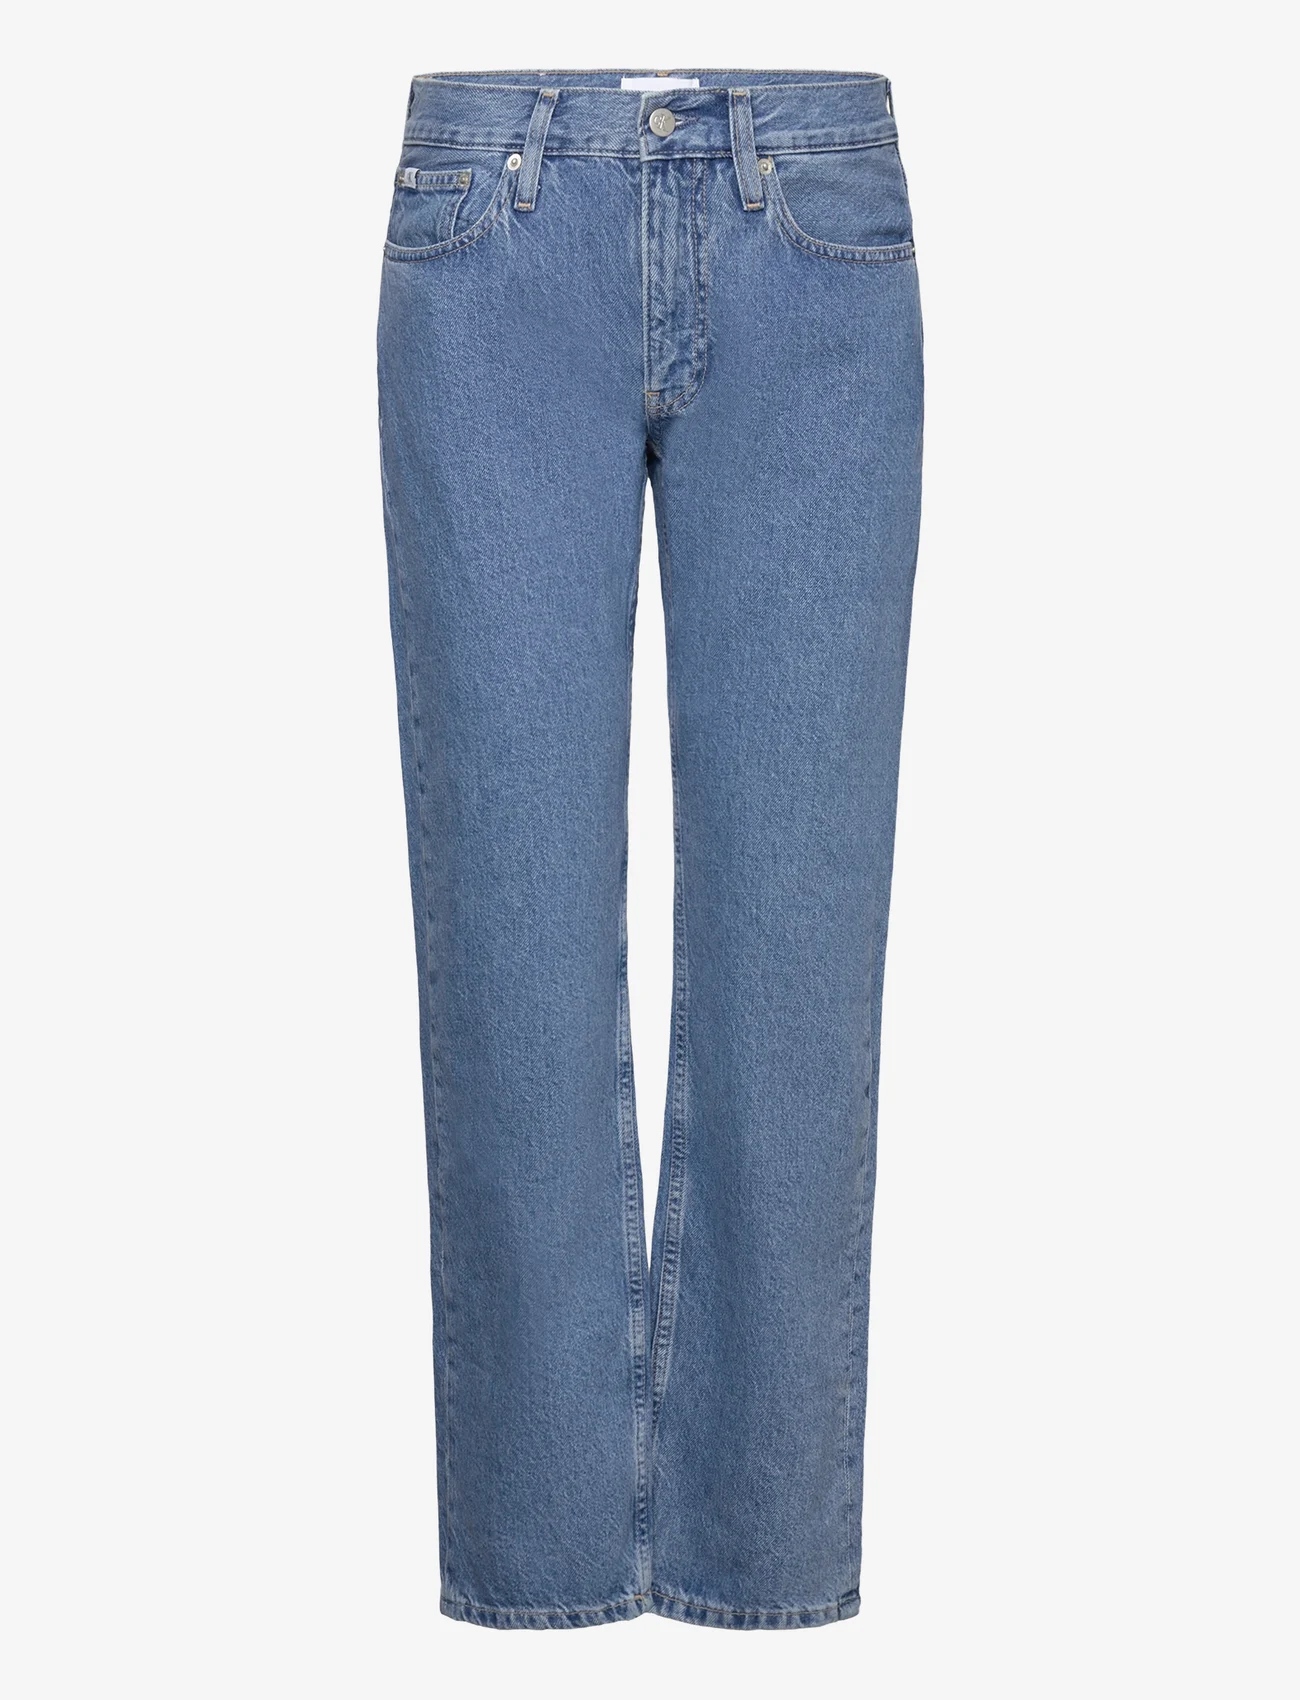 Calvin Klein Jeans - LOW RISE STRAIGHT - tiesaus kirpimo džinsai - denim medium - 0